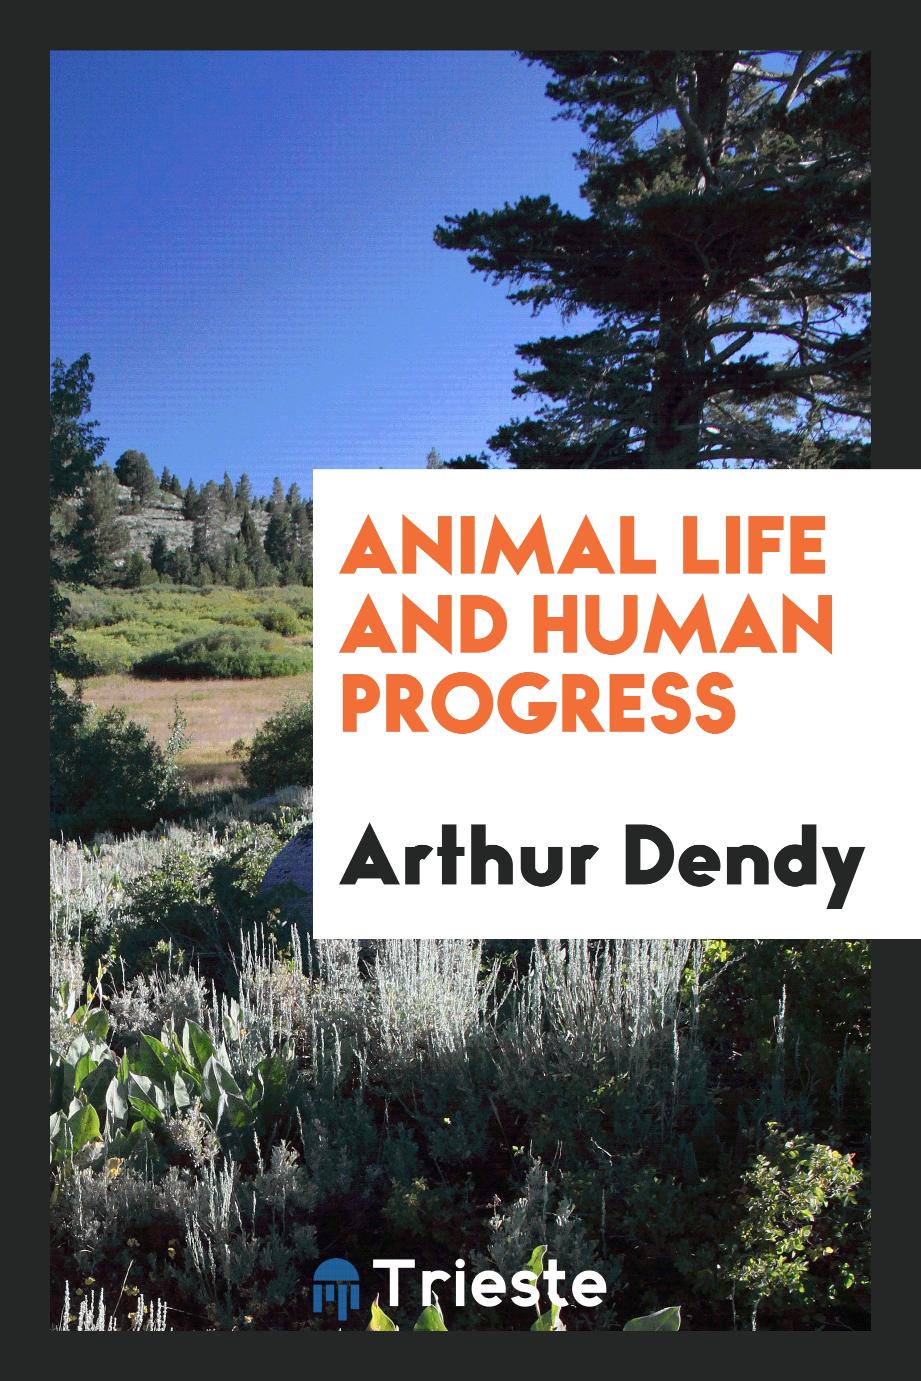 Animal life and human progress